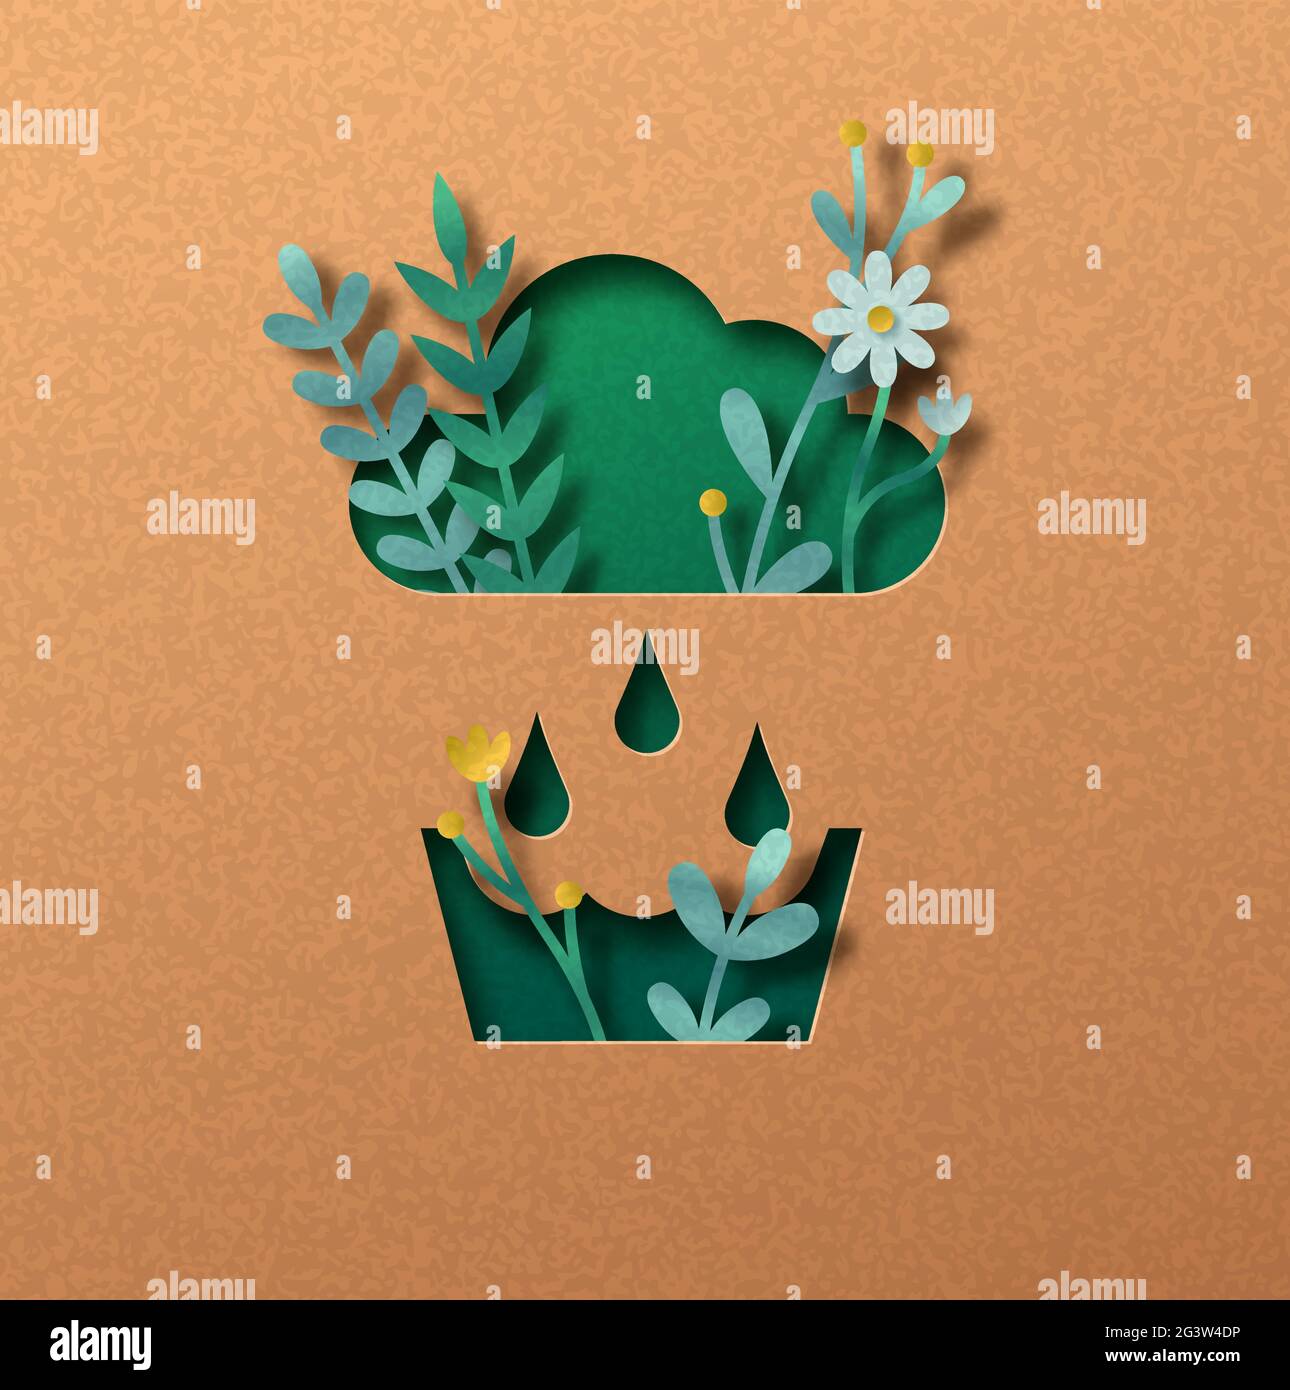 Regenwassernutzung papiergeschnittenes Illustrationskonzept mit grünen Pflanzenblättern, die in der Wolke wachsen. 3D Regenwasser Recycling Ausschnitt Handwerk Design in recycl Stock Vektor